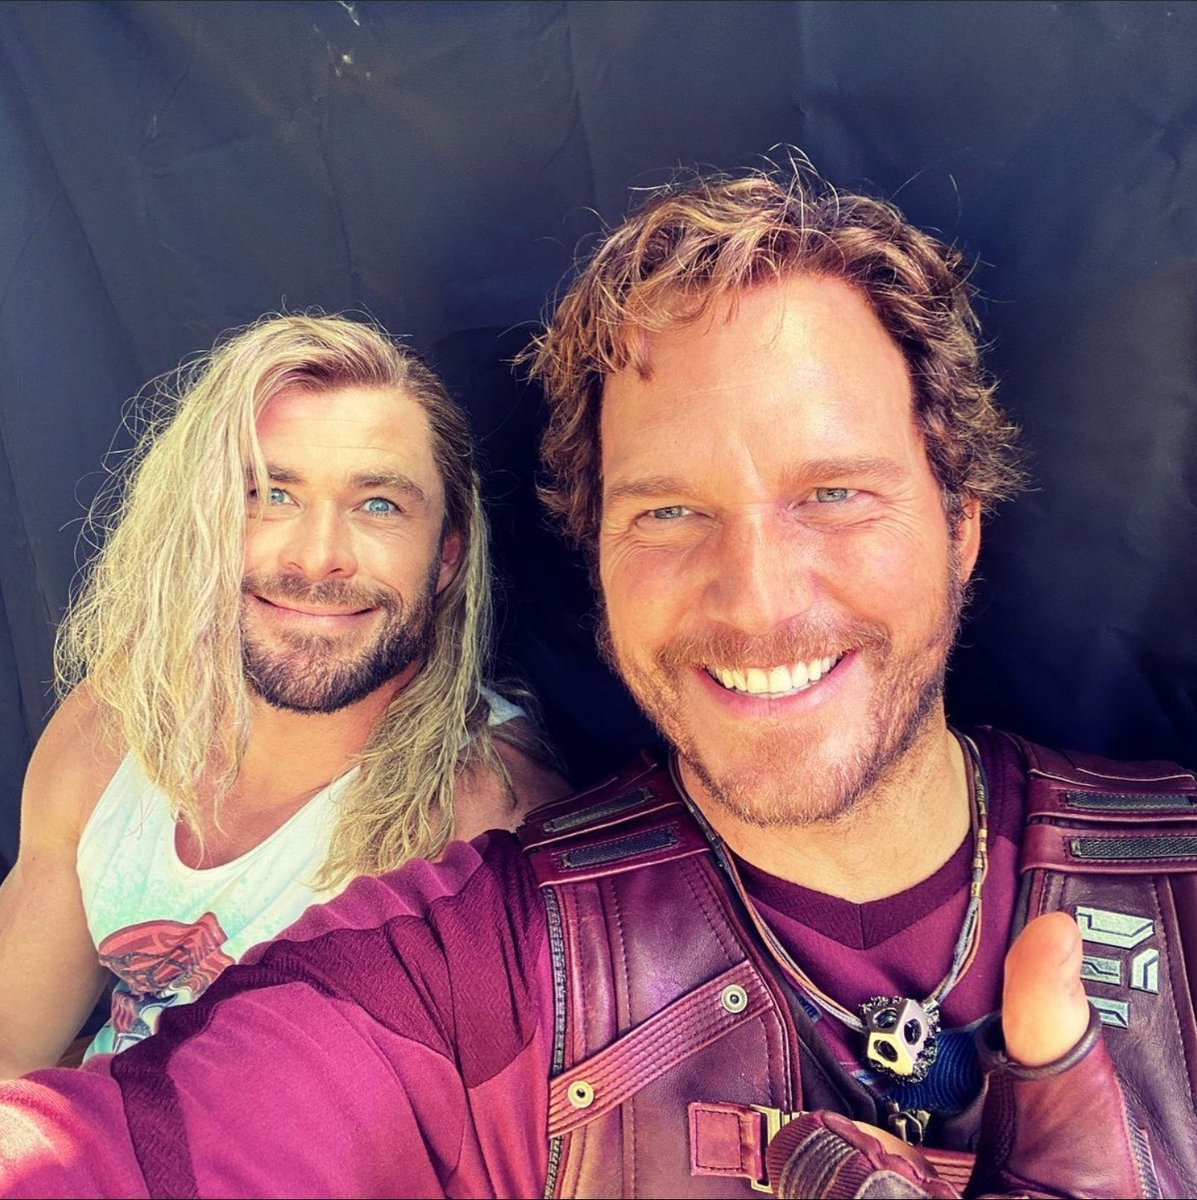 Thor và Star-Lord: Bạn yêu thích Marvel và những siêu anh hùng của họ? Đừng bỏ lỡ cơ hội được chứng kiến hai trái tim hùng mạnh của Thor và Star-Lord đồng hành cùng nhau trong cuộc phiêu lưu đầy mạo hiểm. Hãy nhấn vào hình ảnh để cùng theo dõi những chiêu trò hấp dẫn của bộ đôi này!